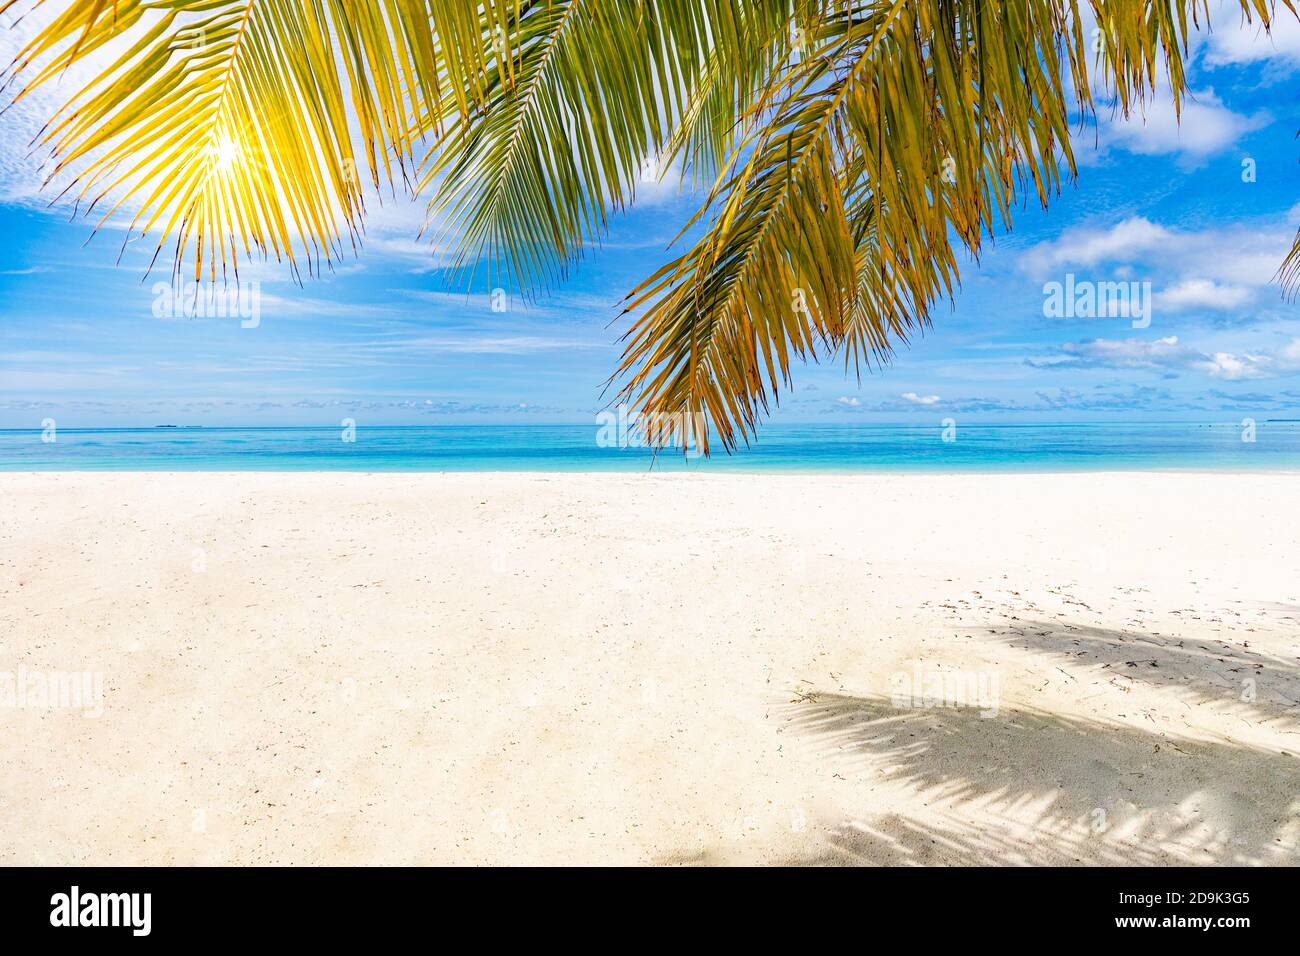 Palmen und tropischer Strand, friedliche ruhige Naturlandschaft. Seascape, weißer Sand am Meer unter blauem Himmel. Tolle Sommerlandschaft Stockfoto